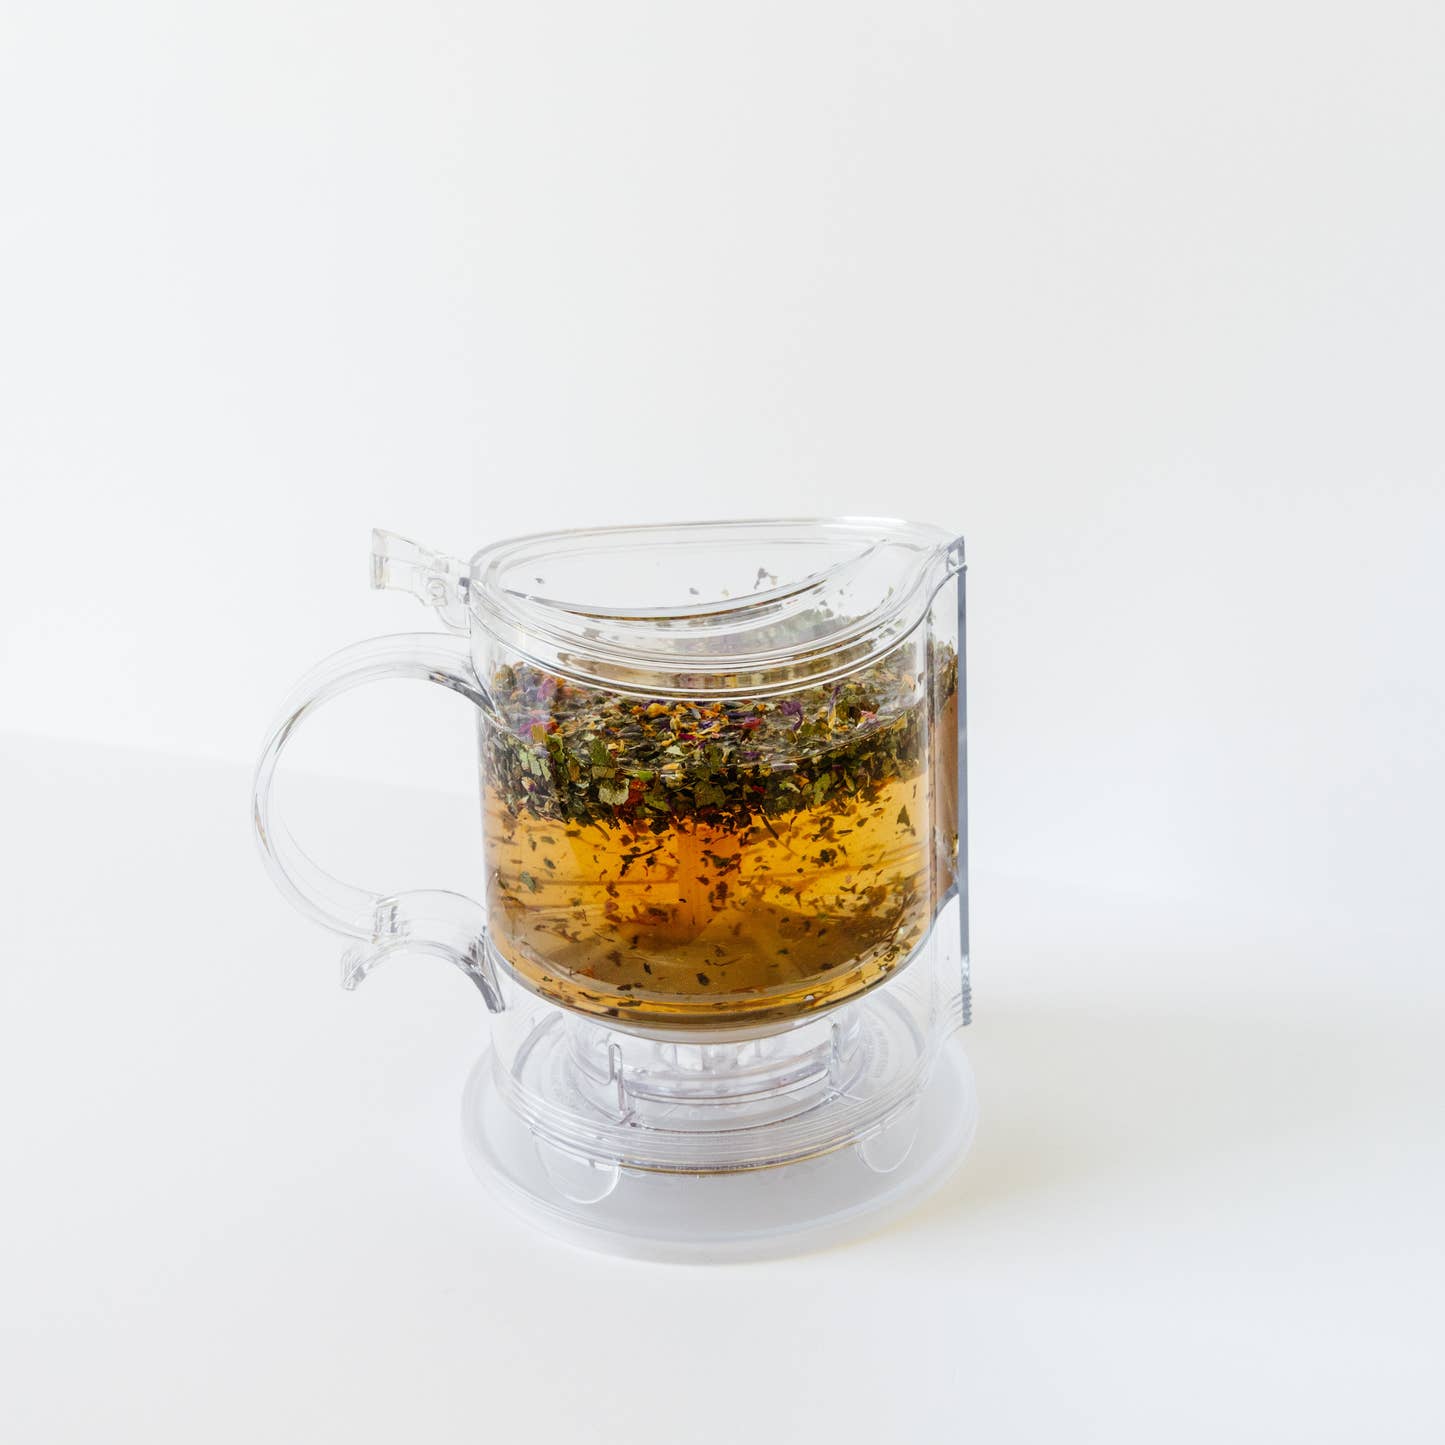 Gravity Loose Leaf Tea Maker